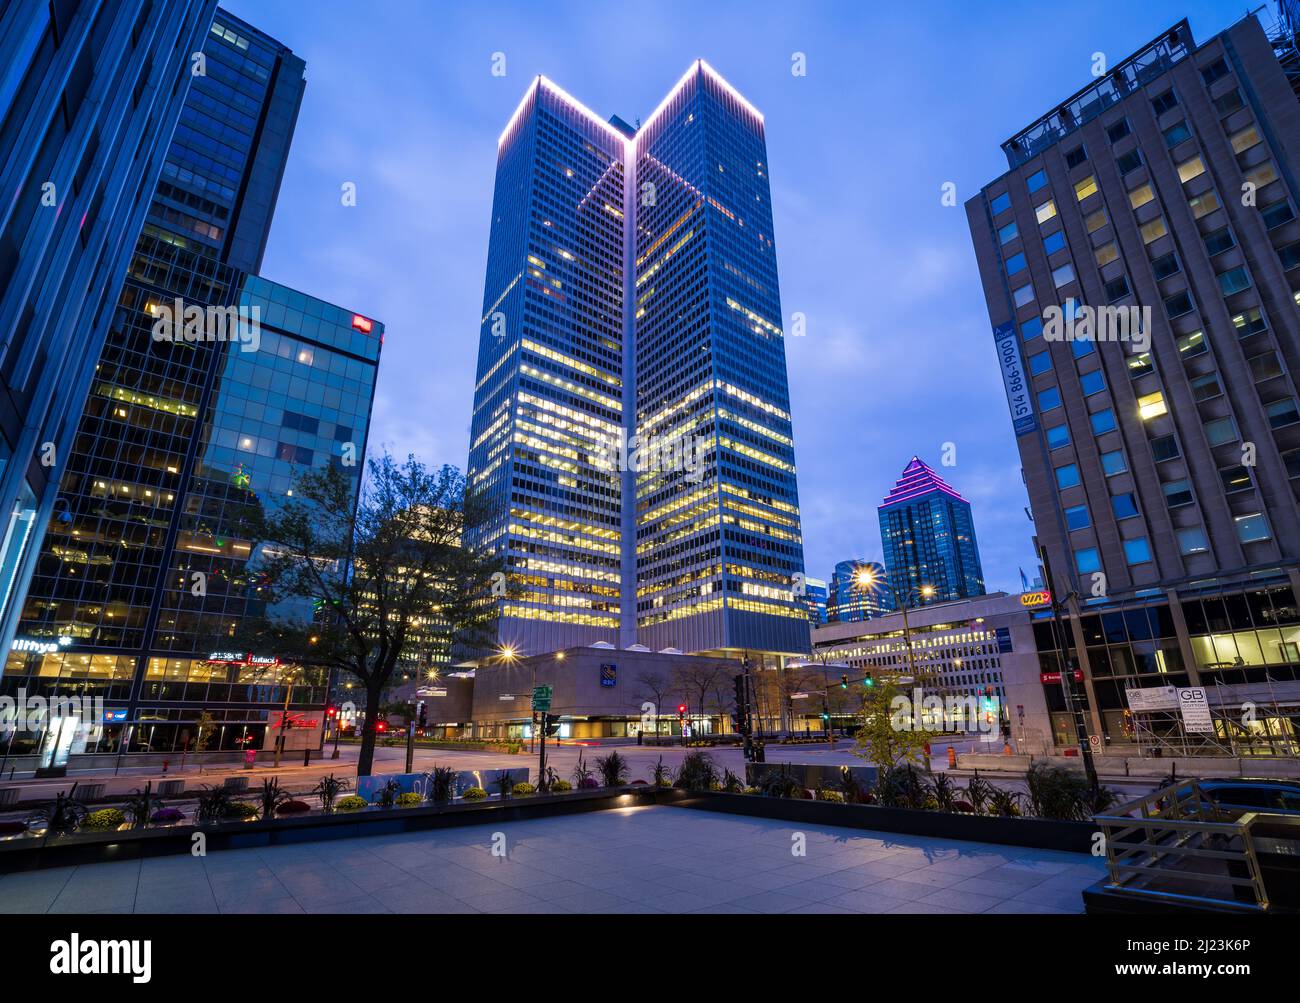 Der Place Ville marie ist das anerkannteste Gebäude in Montreal, sein drehbares Licht erhellt den Himmel von Montreal. Stockfoto